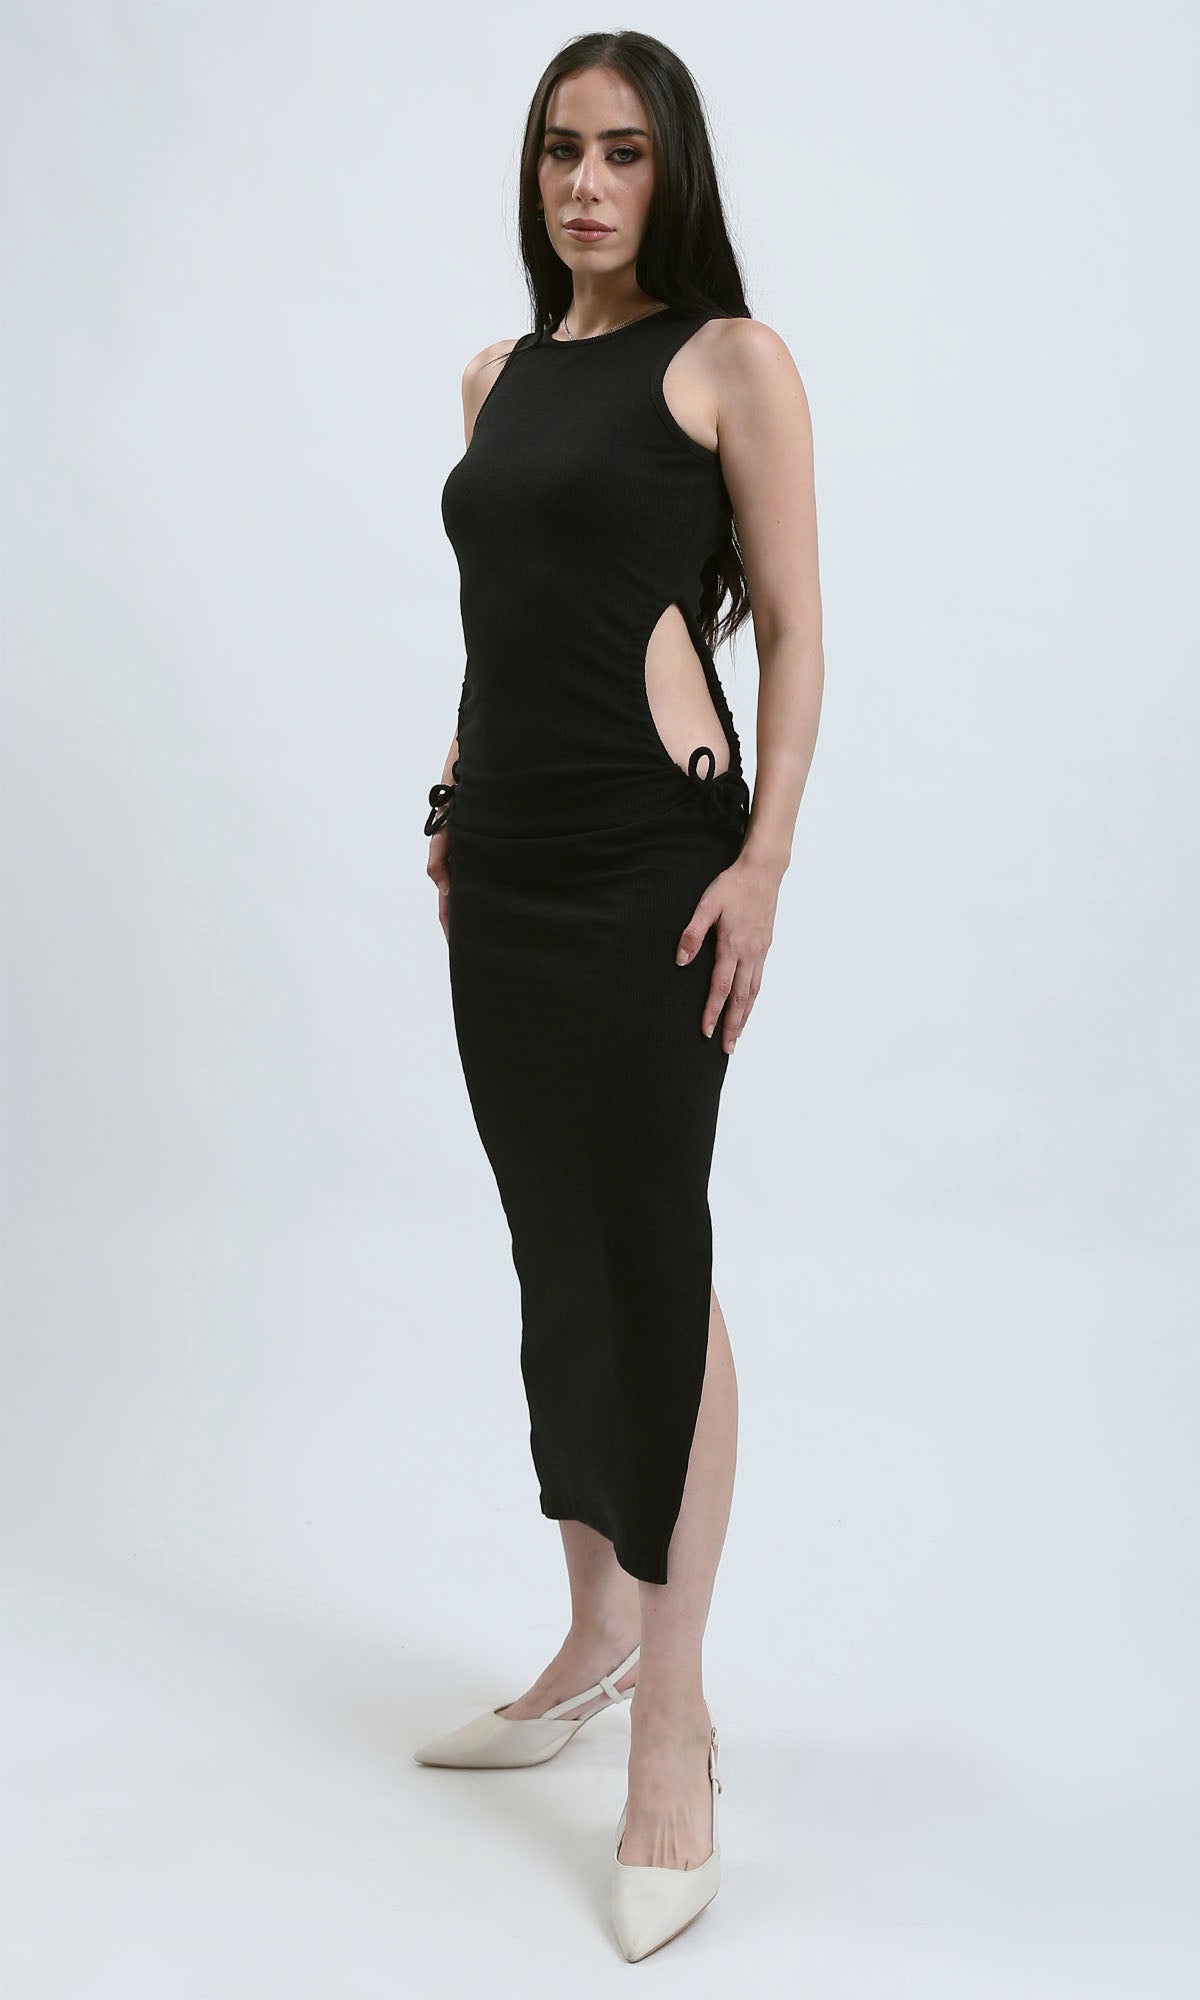 O182025 Round Neck Sleeveless Ribbed Maxi Dress - Black